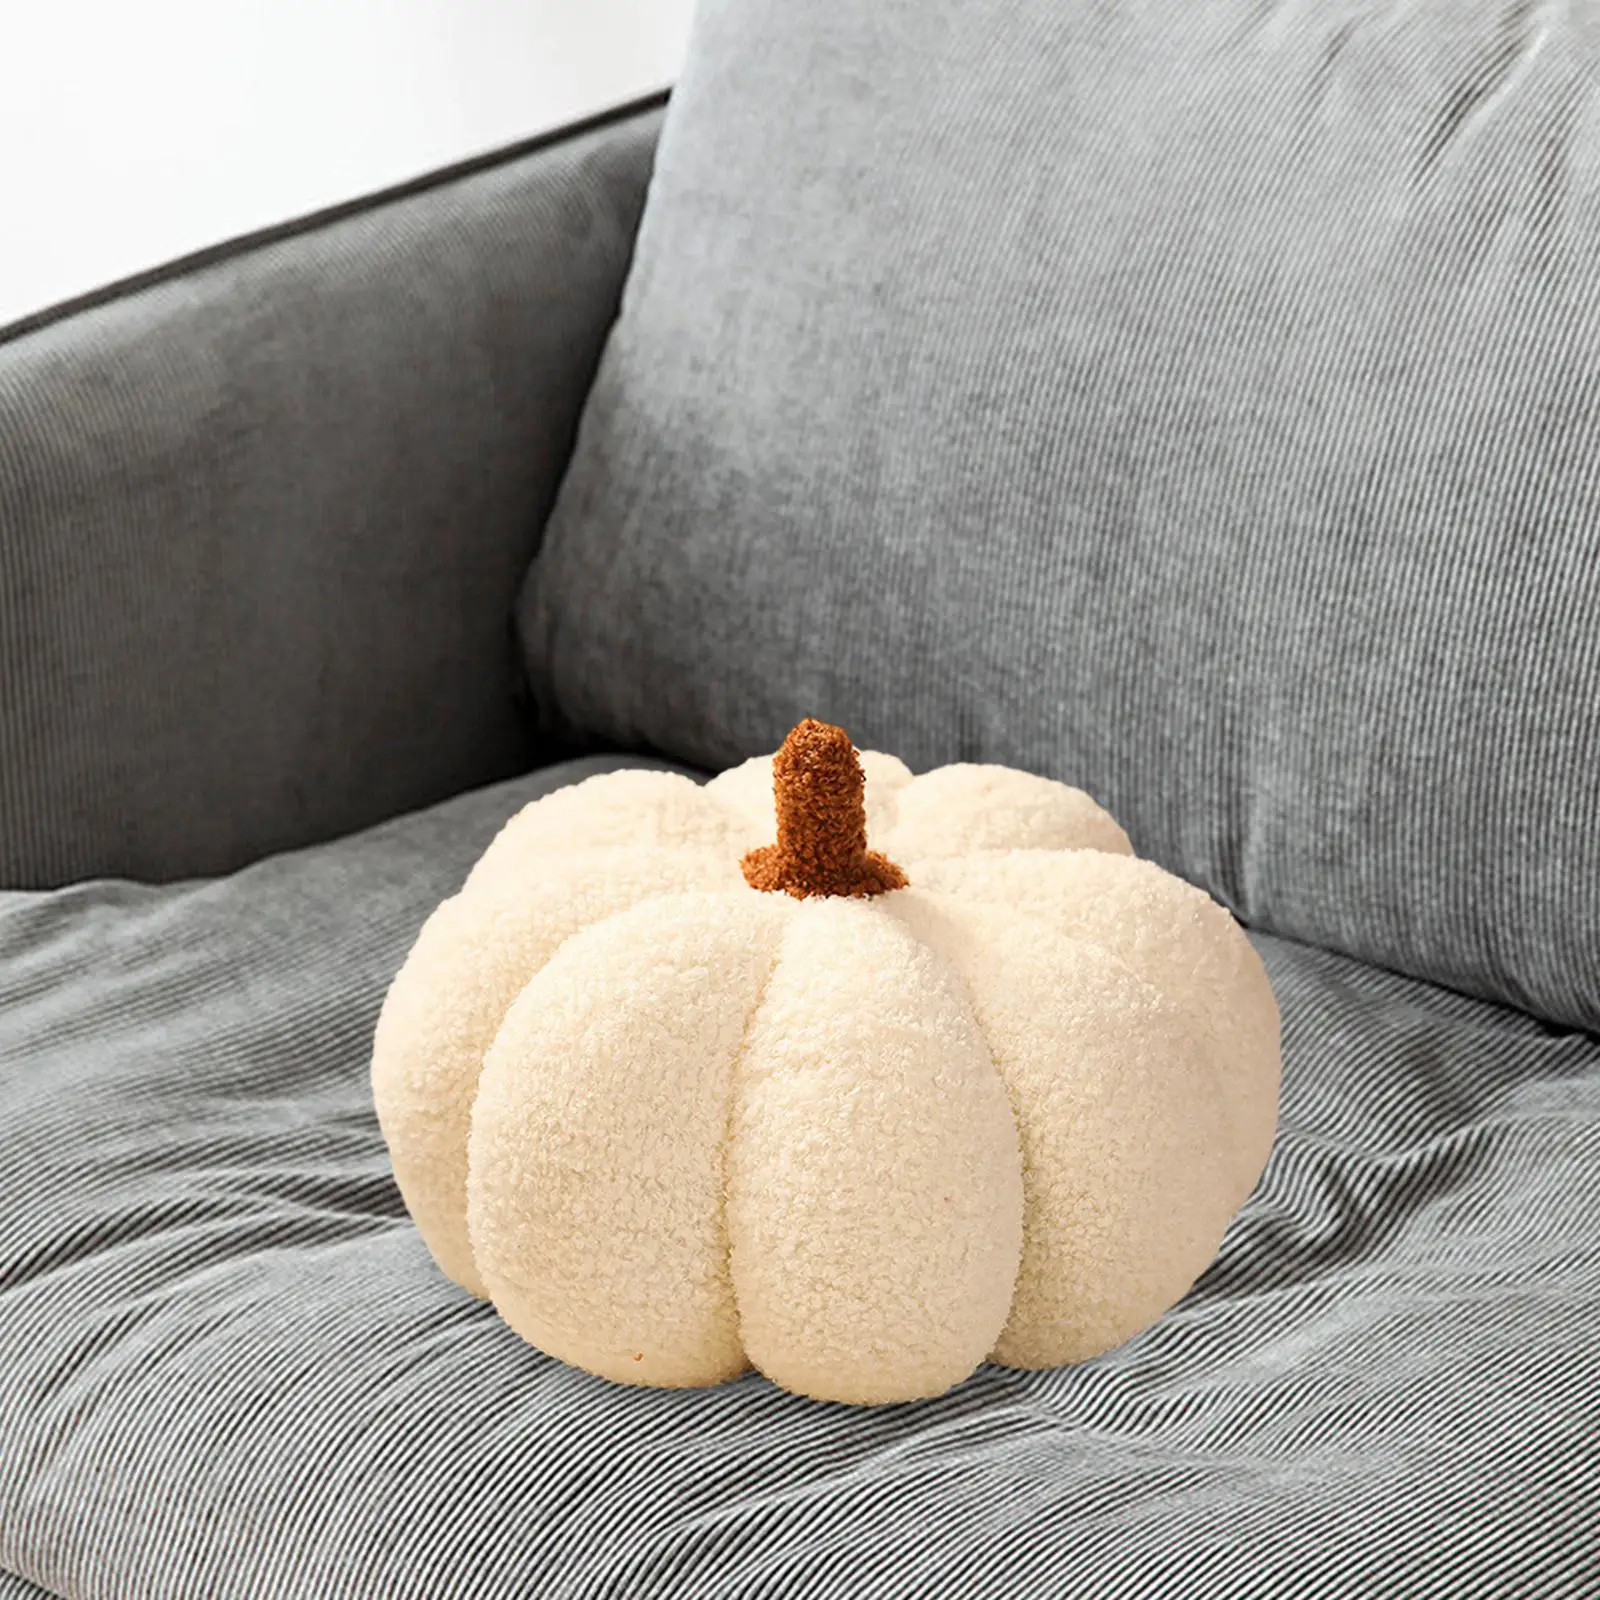 Halloween Pumpkin Pillows Pumpkin Throw Pillows for Couch Living Room